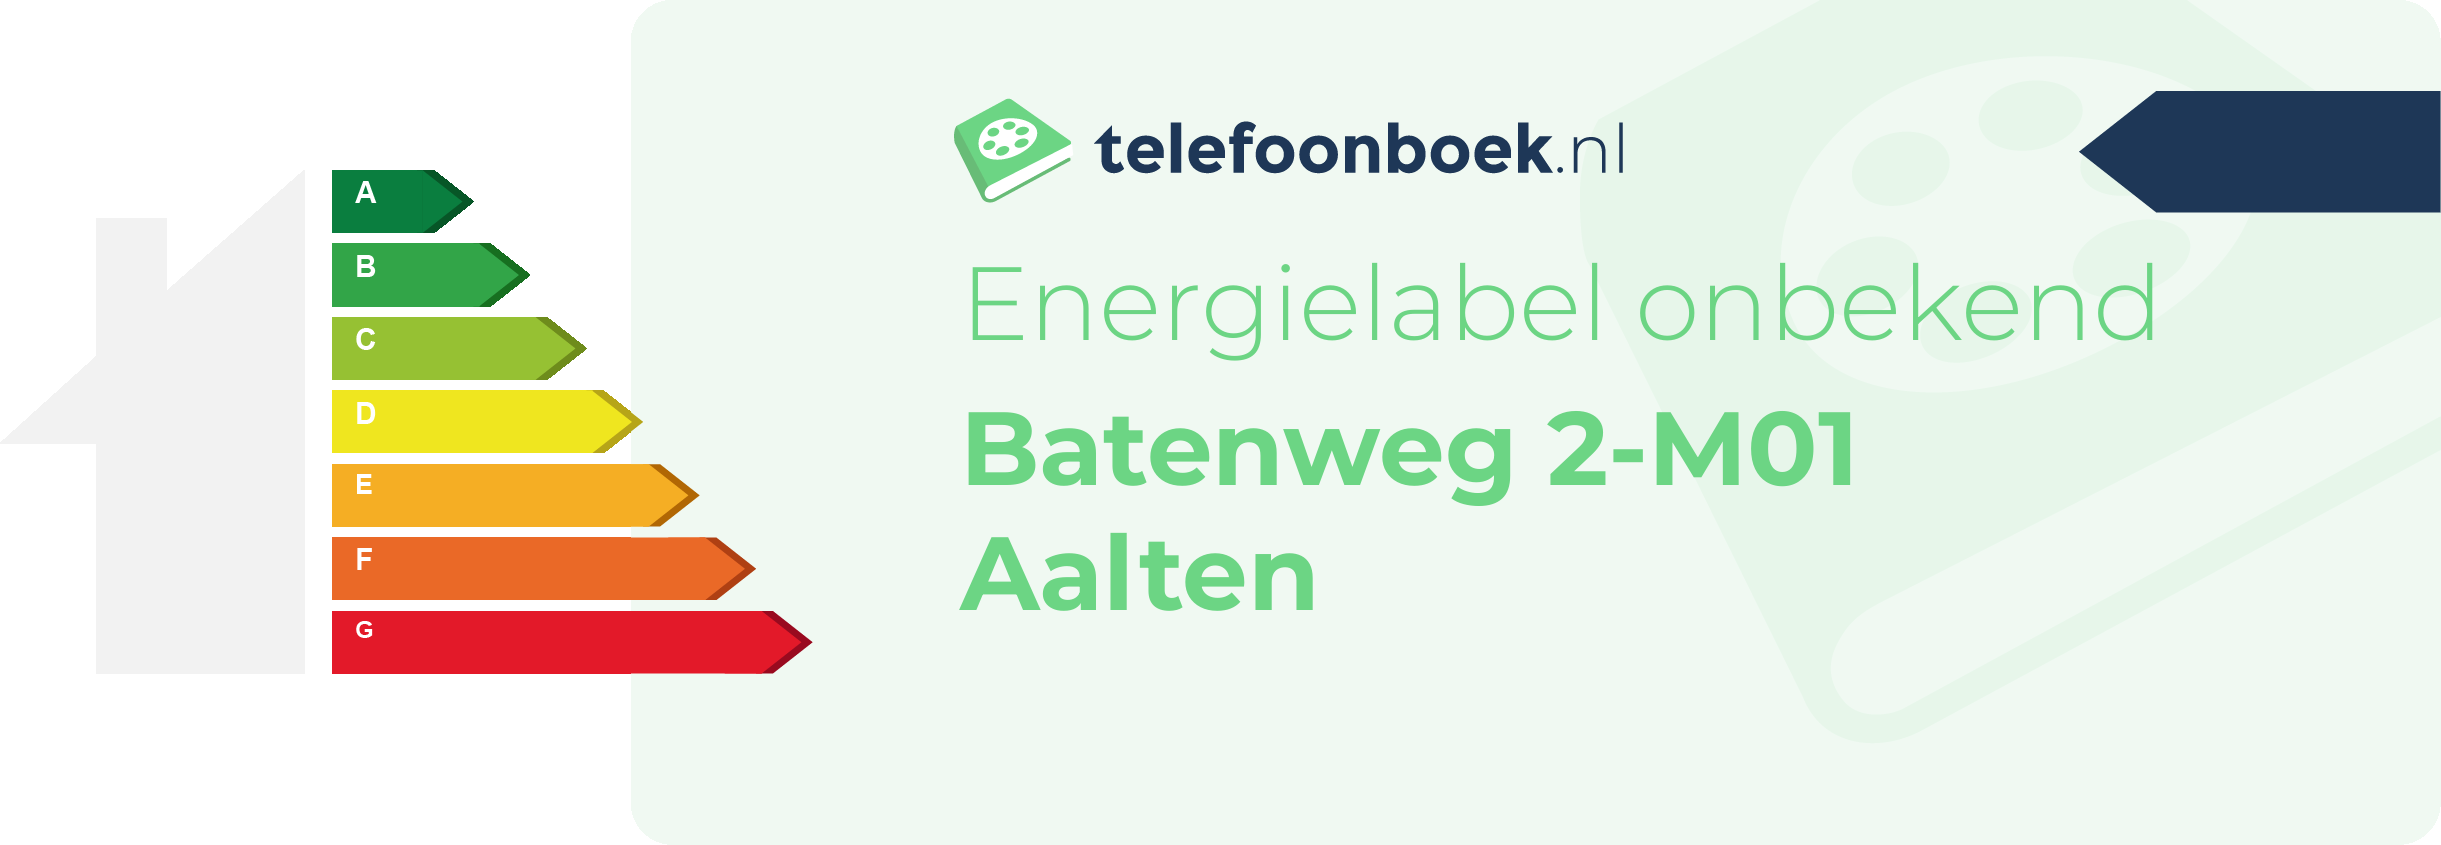 Energielabel Batenweg 2-M01 Aalten